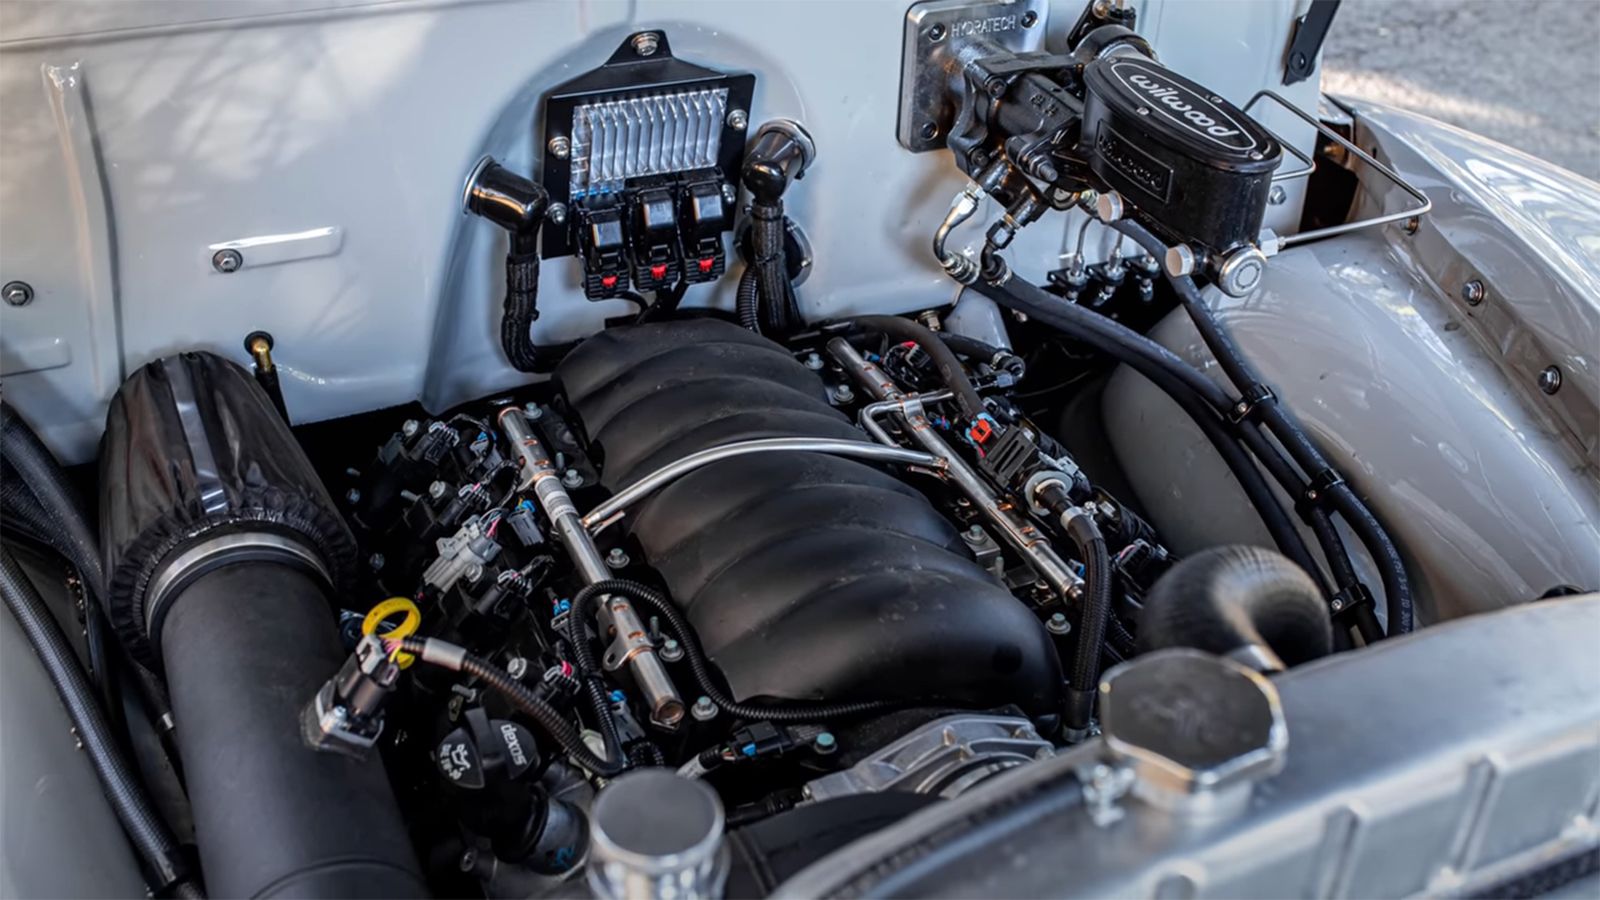 O V8 κινητήρας Chevy Performance E-Rod των 6,2 λίτρων, αποδίδει ισχύ 440 ίππων και ροπή 583 Nm.